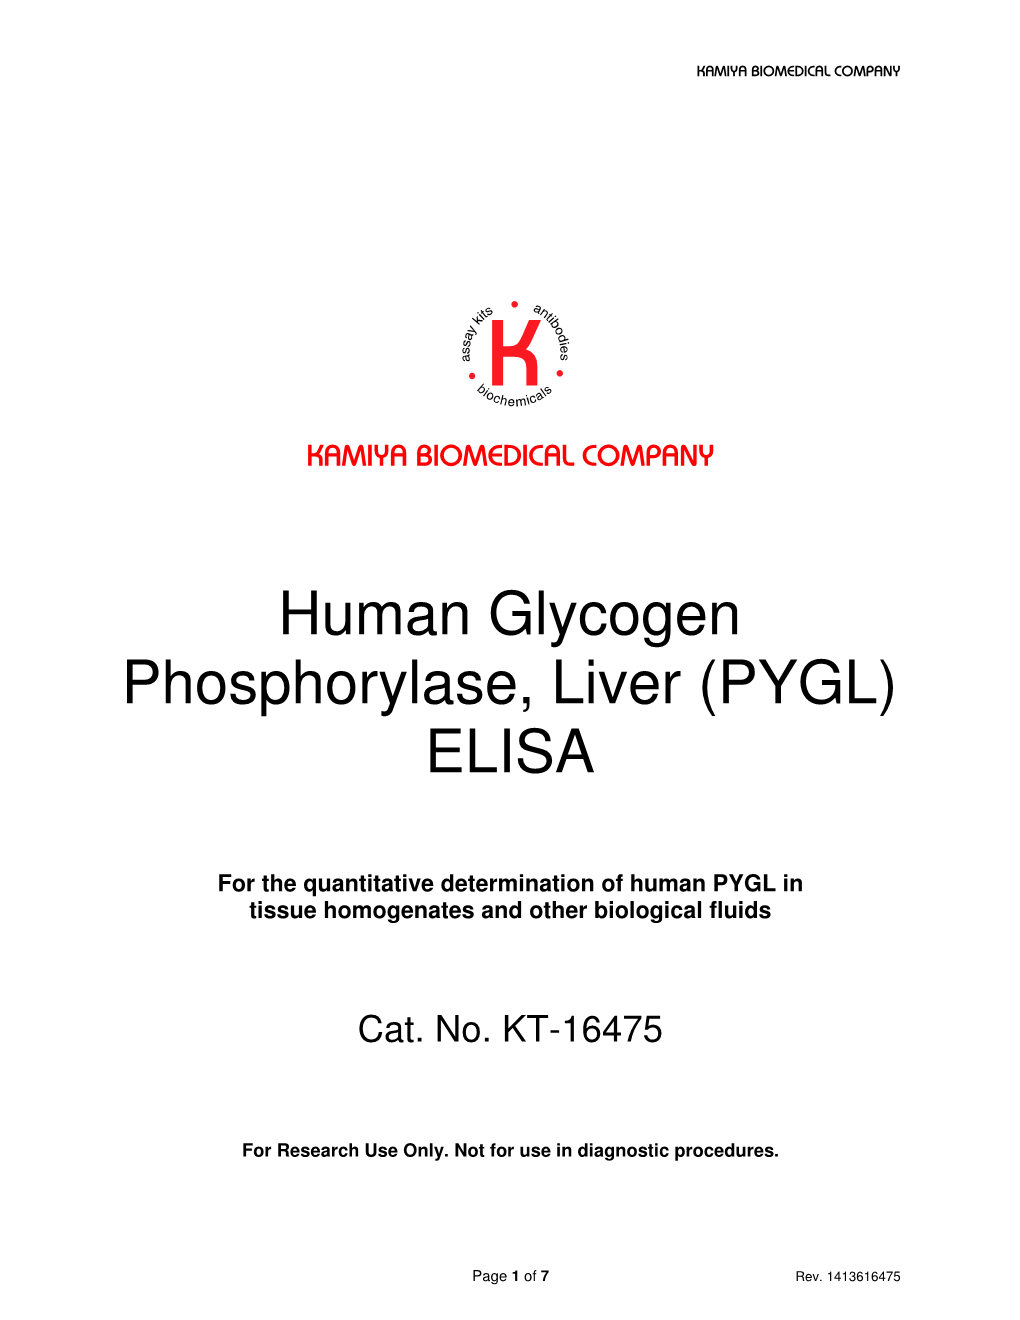 Human Glycogen Phosphorylase, Liver (PYGL) ELISA